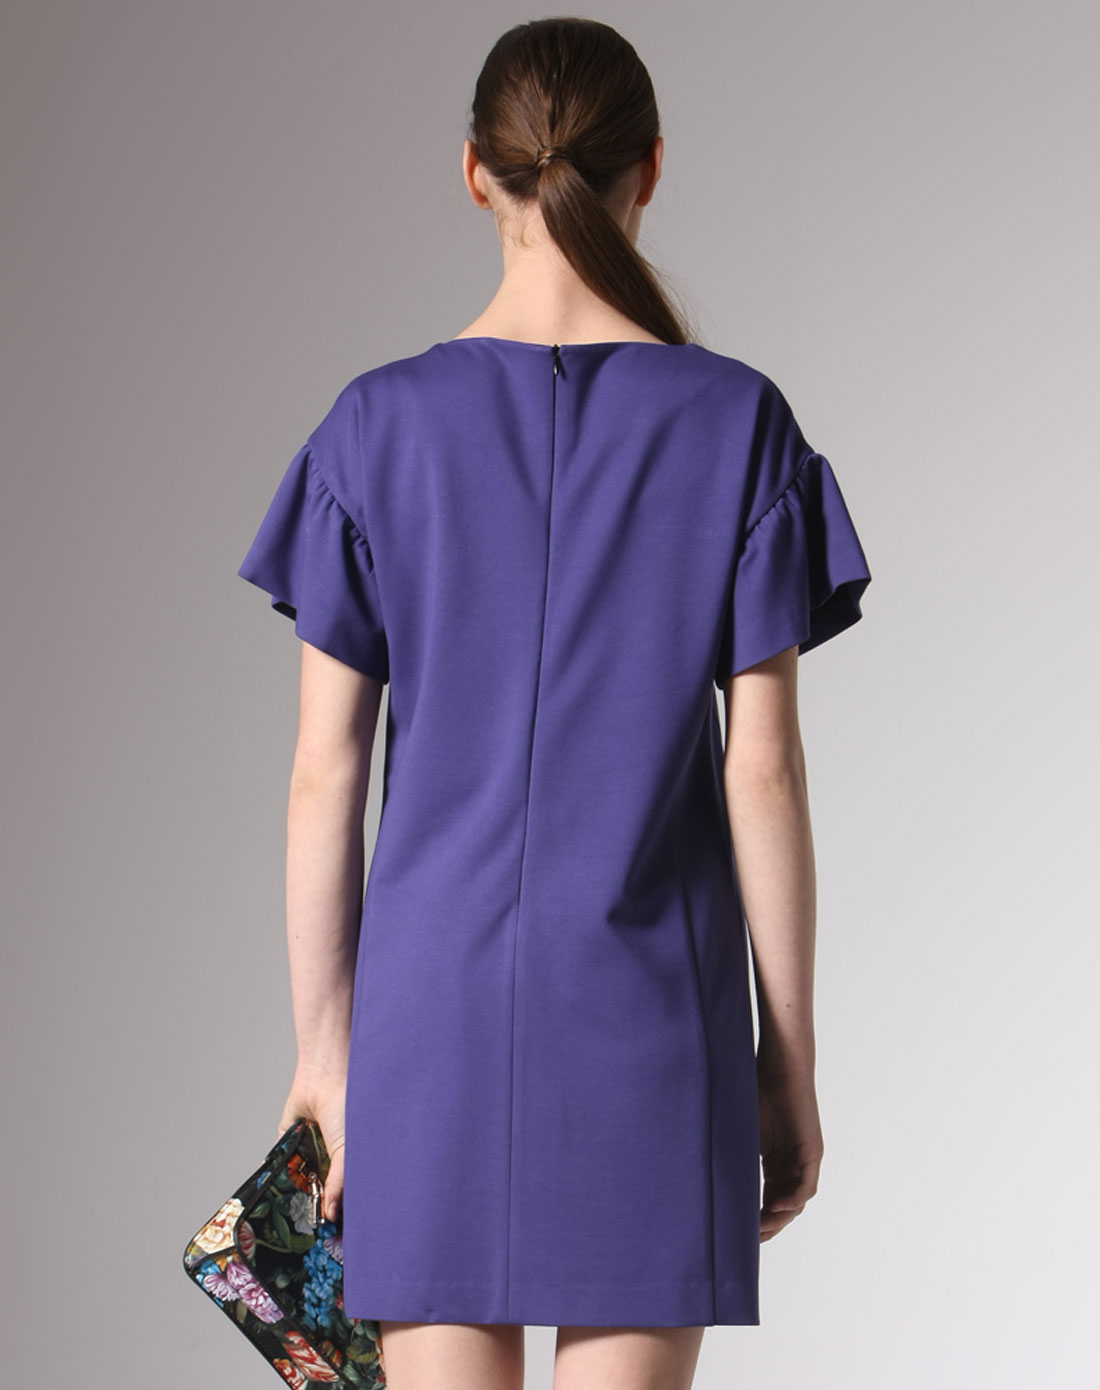 紫蓝色短袖连衣裙